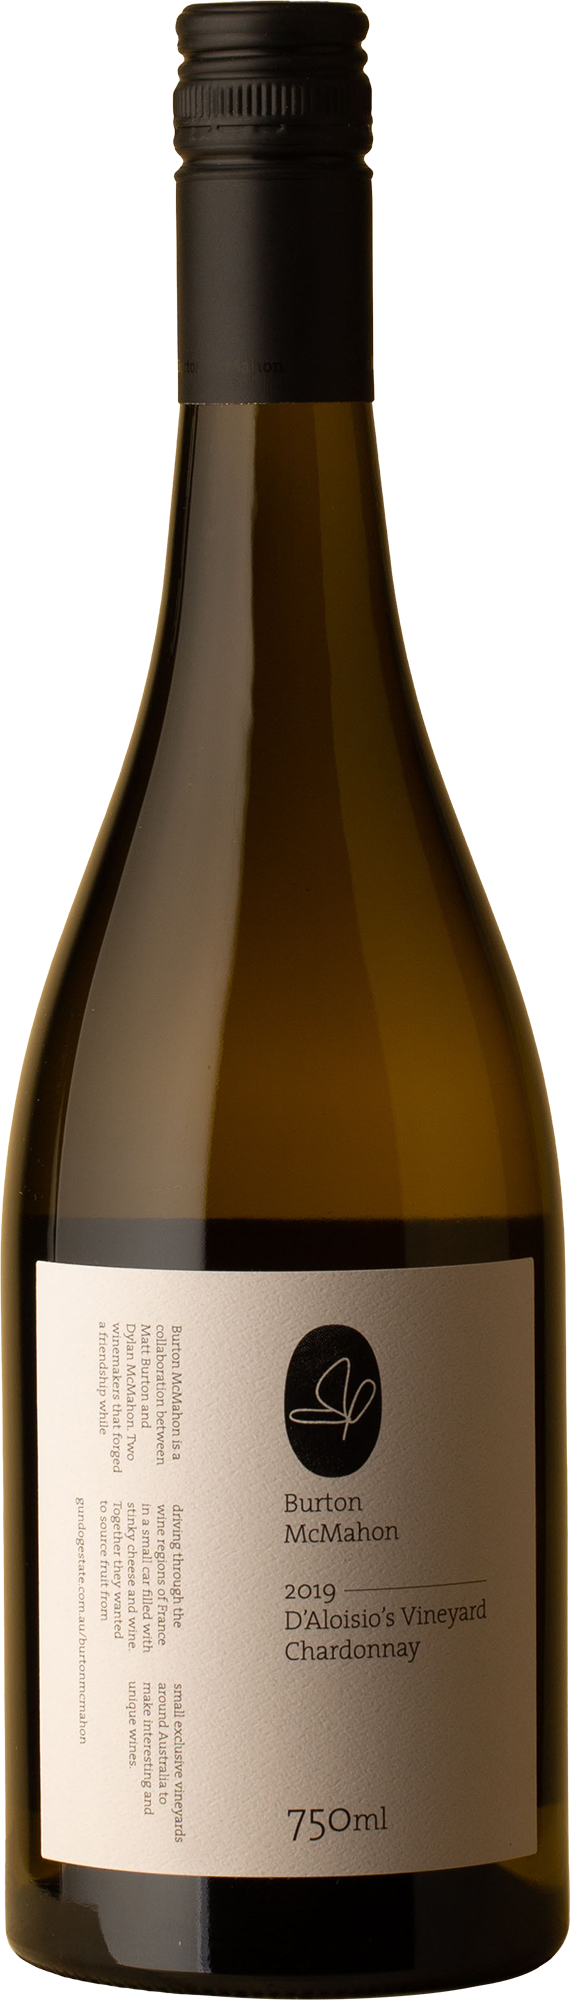 Burton McMahon - D'Aloisio Chardonnay 2019 White Wine